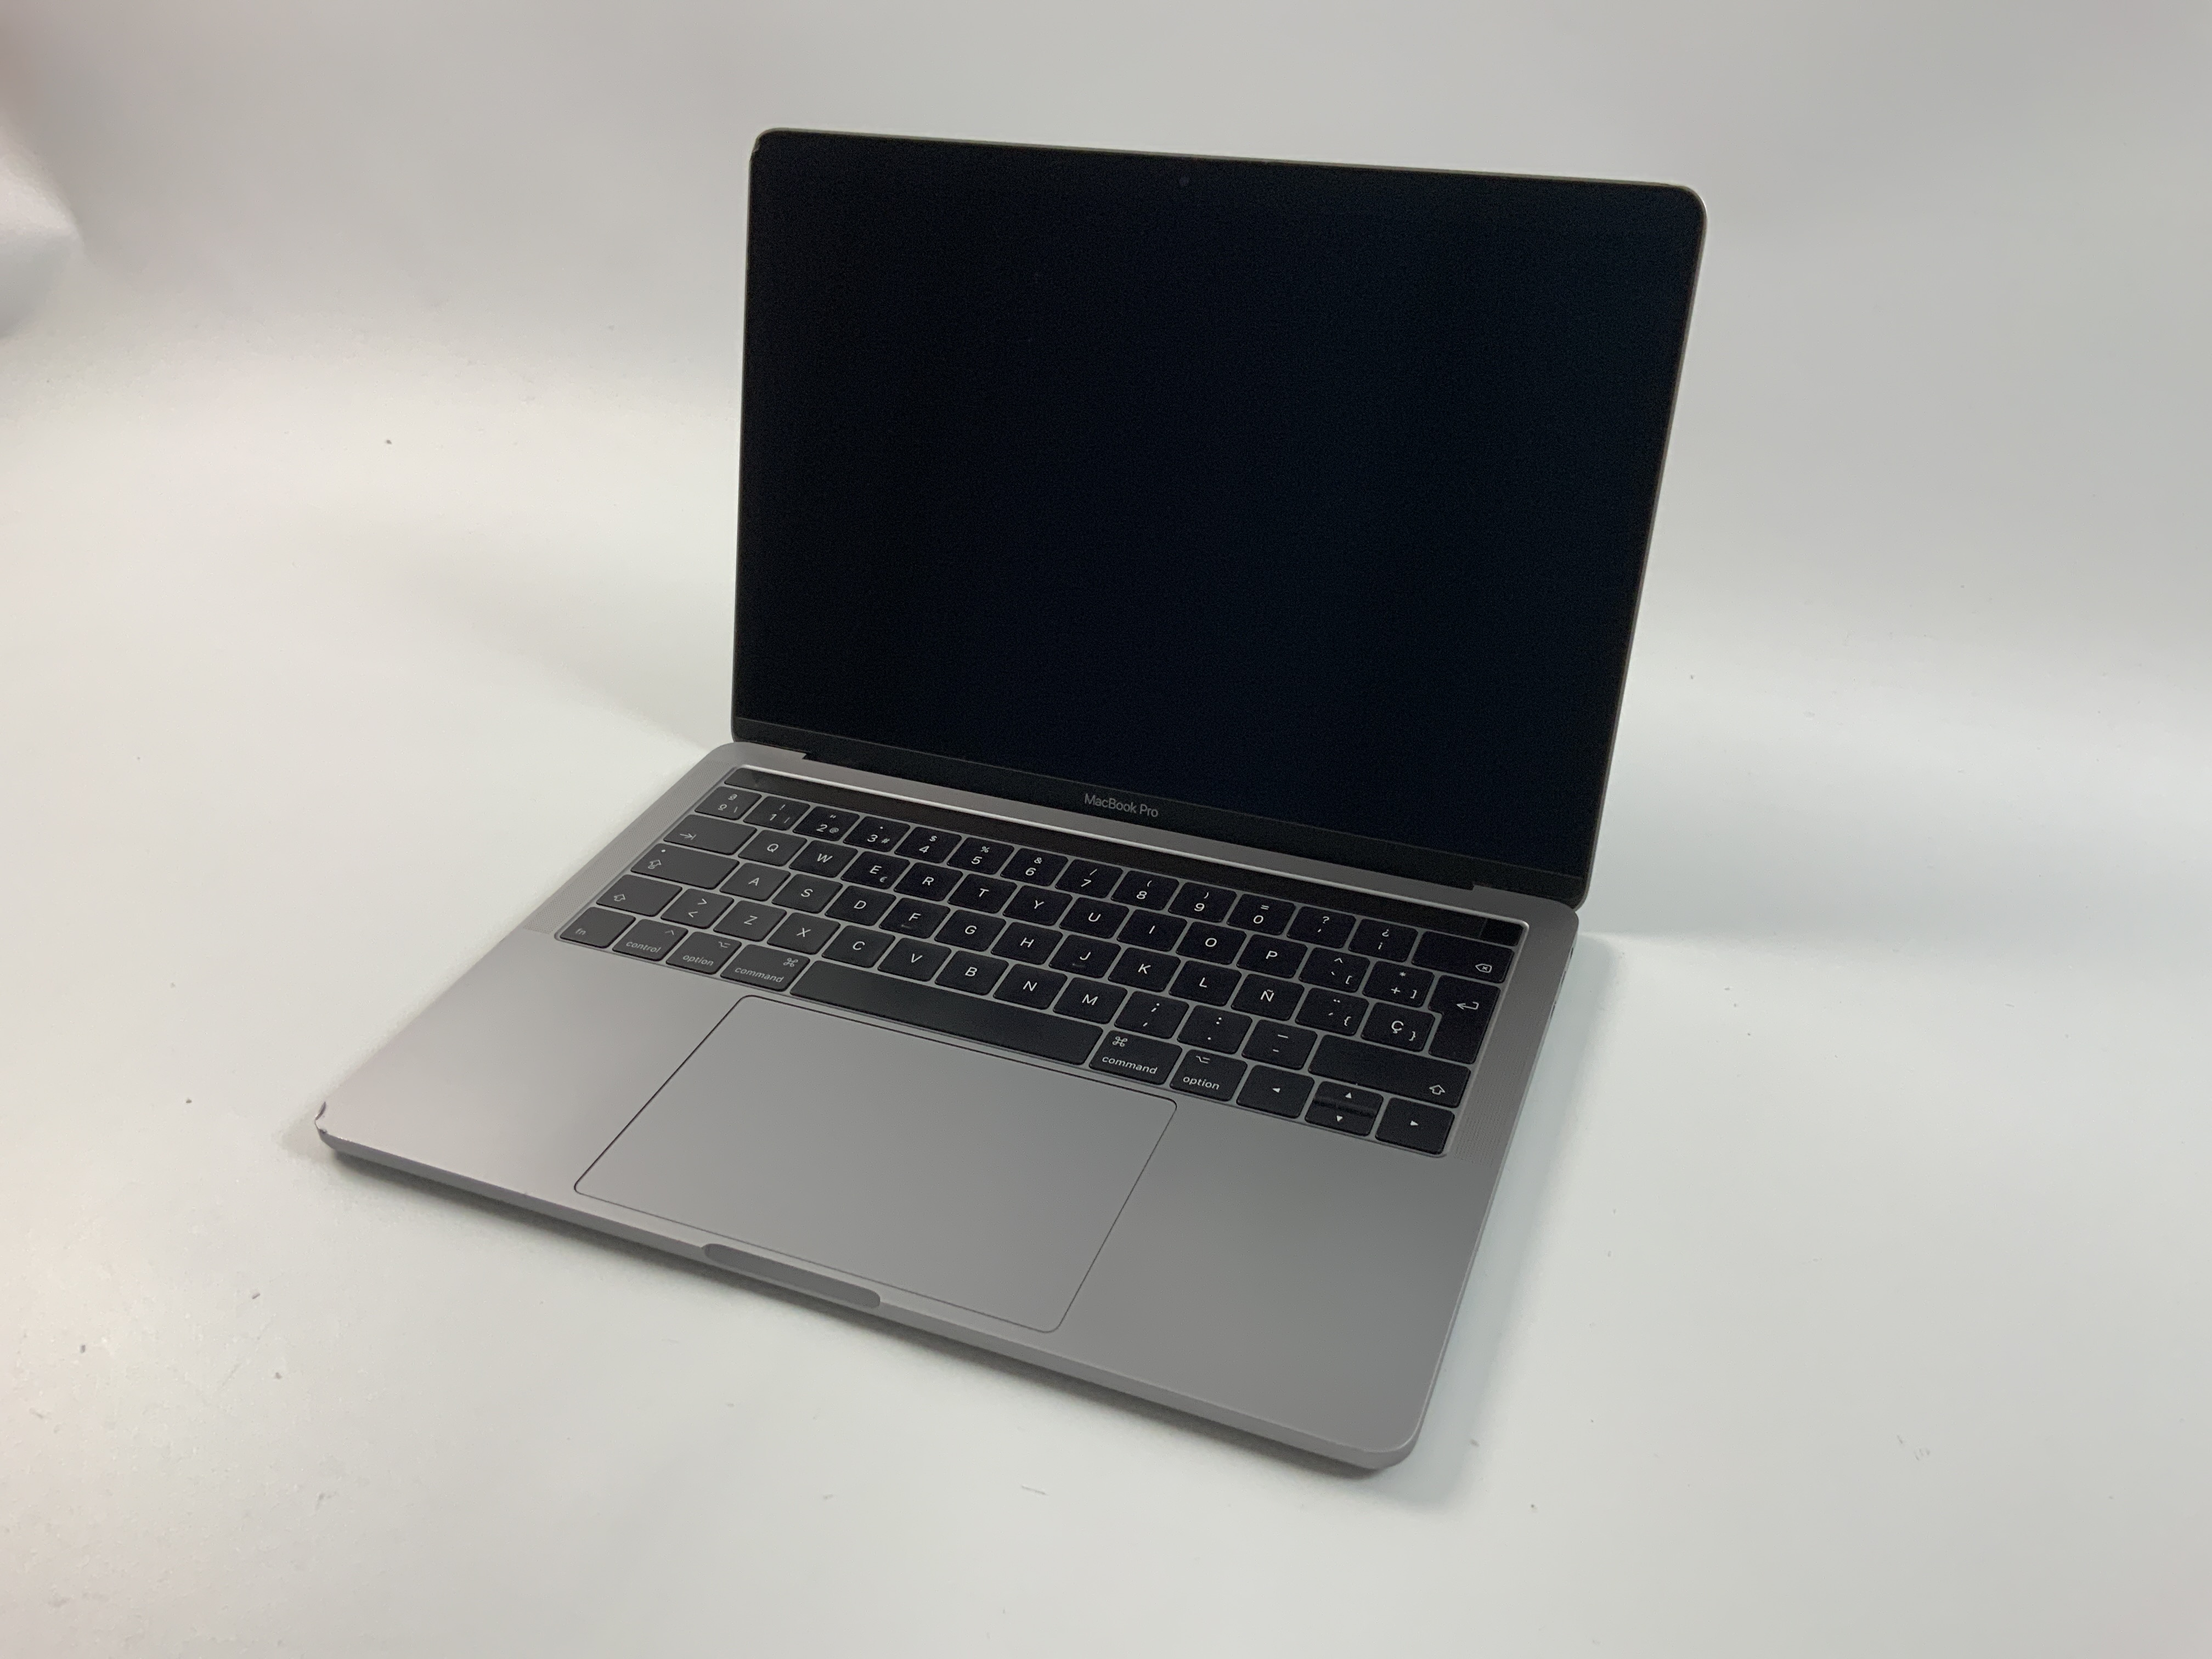 MacBook Pro 13" 4TBT Mid 2017 (Intel Core i5 3.1 GHz 16 GB RAM 256 GB SSD), Space Gray, Intel Core i5 3.1 GHz, 16 GB RAM, 256 GB SSD, immagine 1